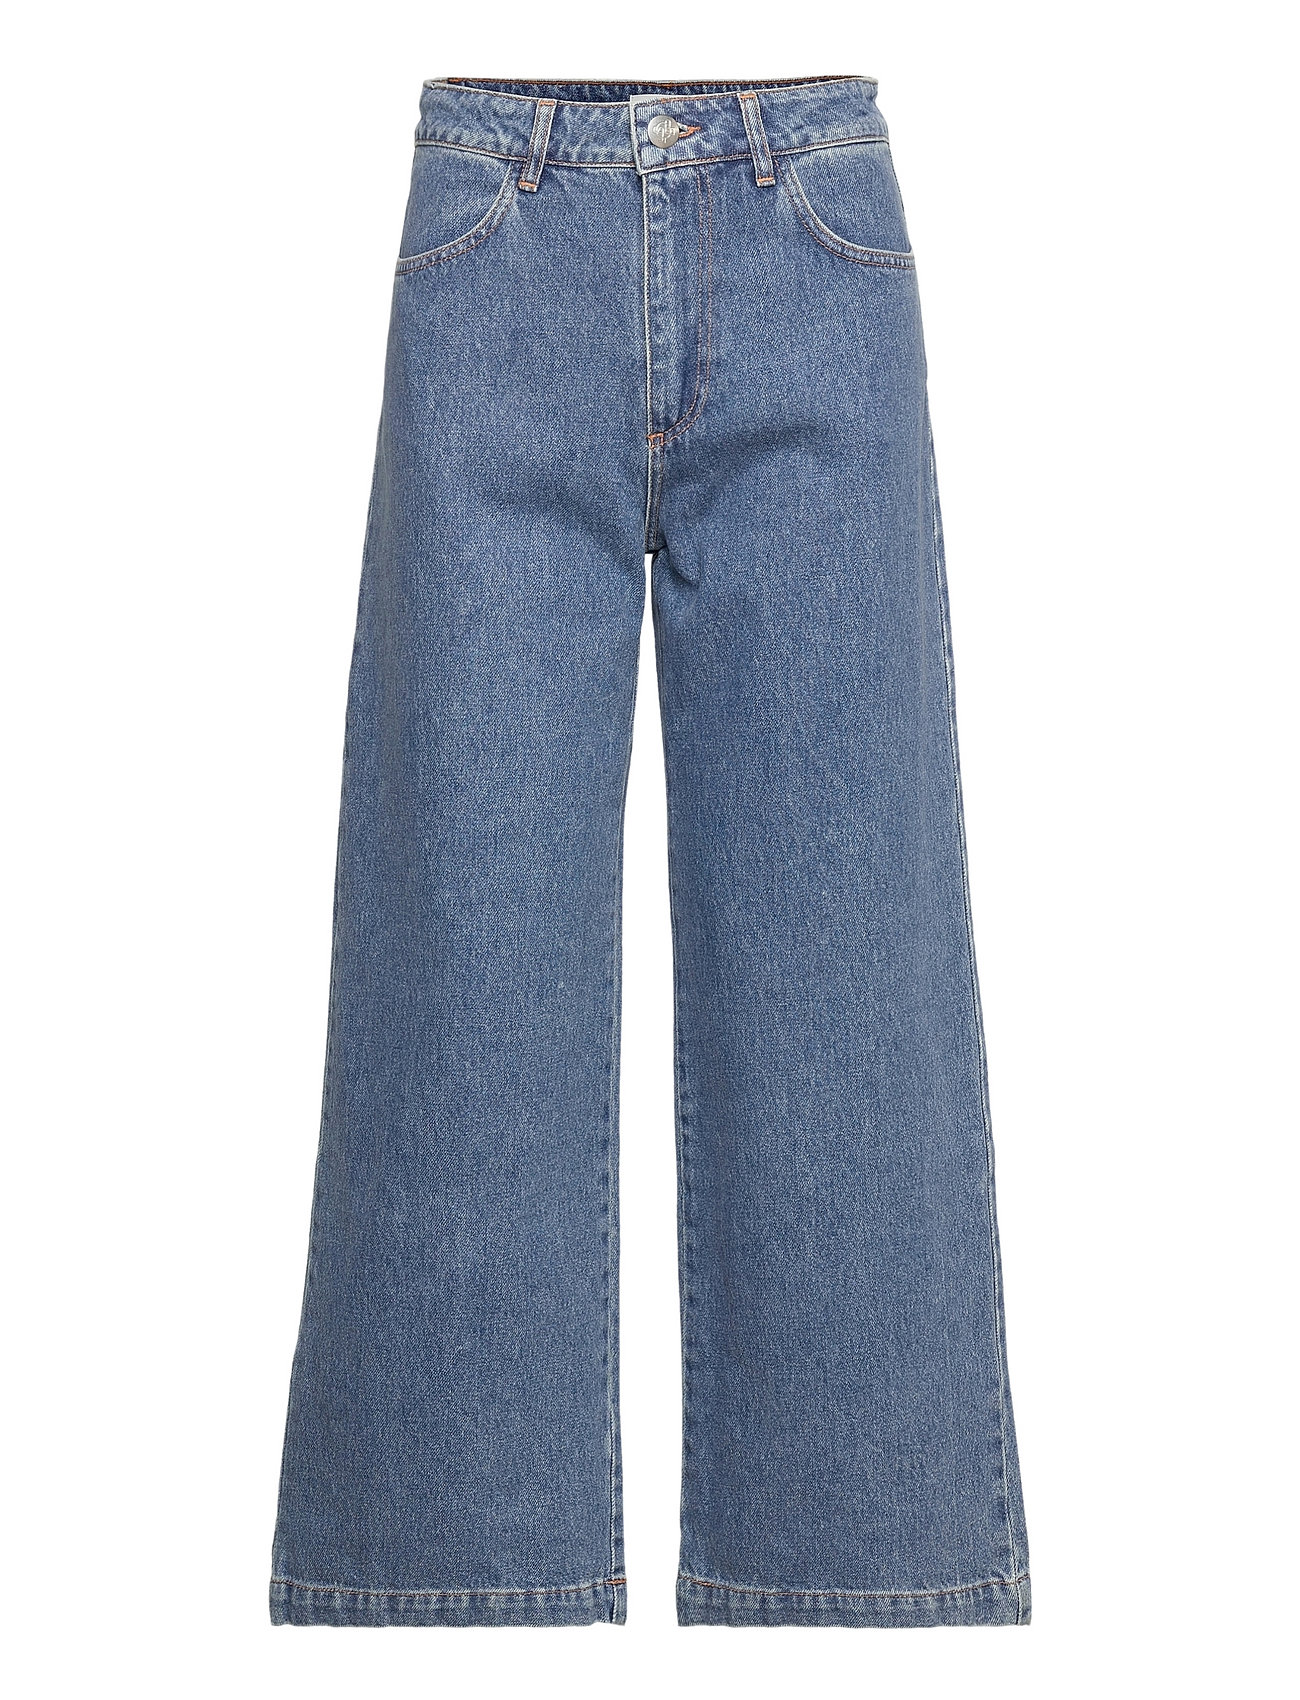 Før Potentiel afbrudt Just Female Calm Jeans 0104 - Brede jeans - Boozt.com